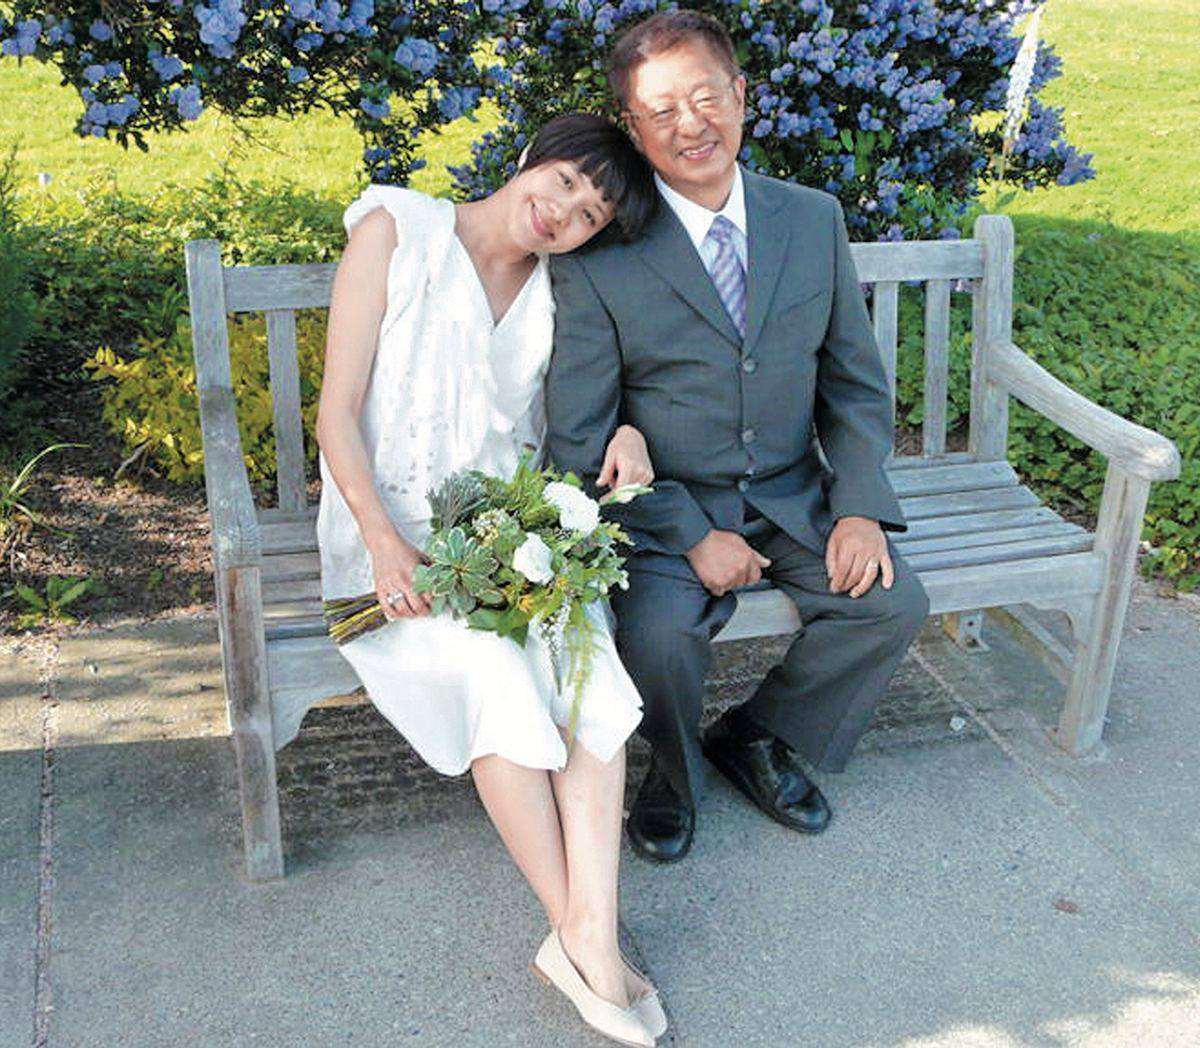 林嘉欣 袁劍偉 2010年6月 懷胎6個月的林嘉欣與袁劍偉在溫哥華舉行婚禮。